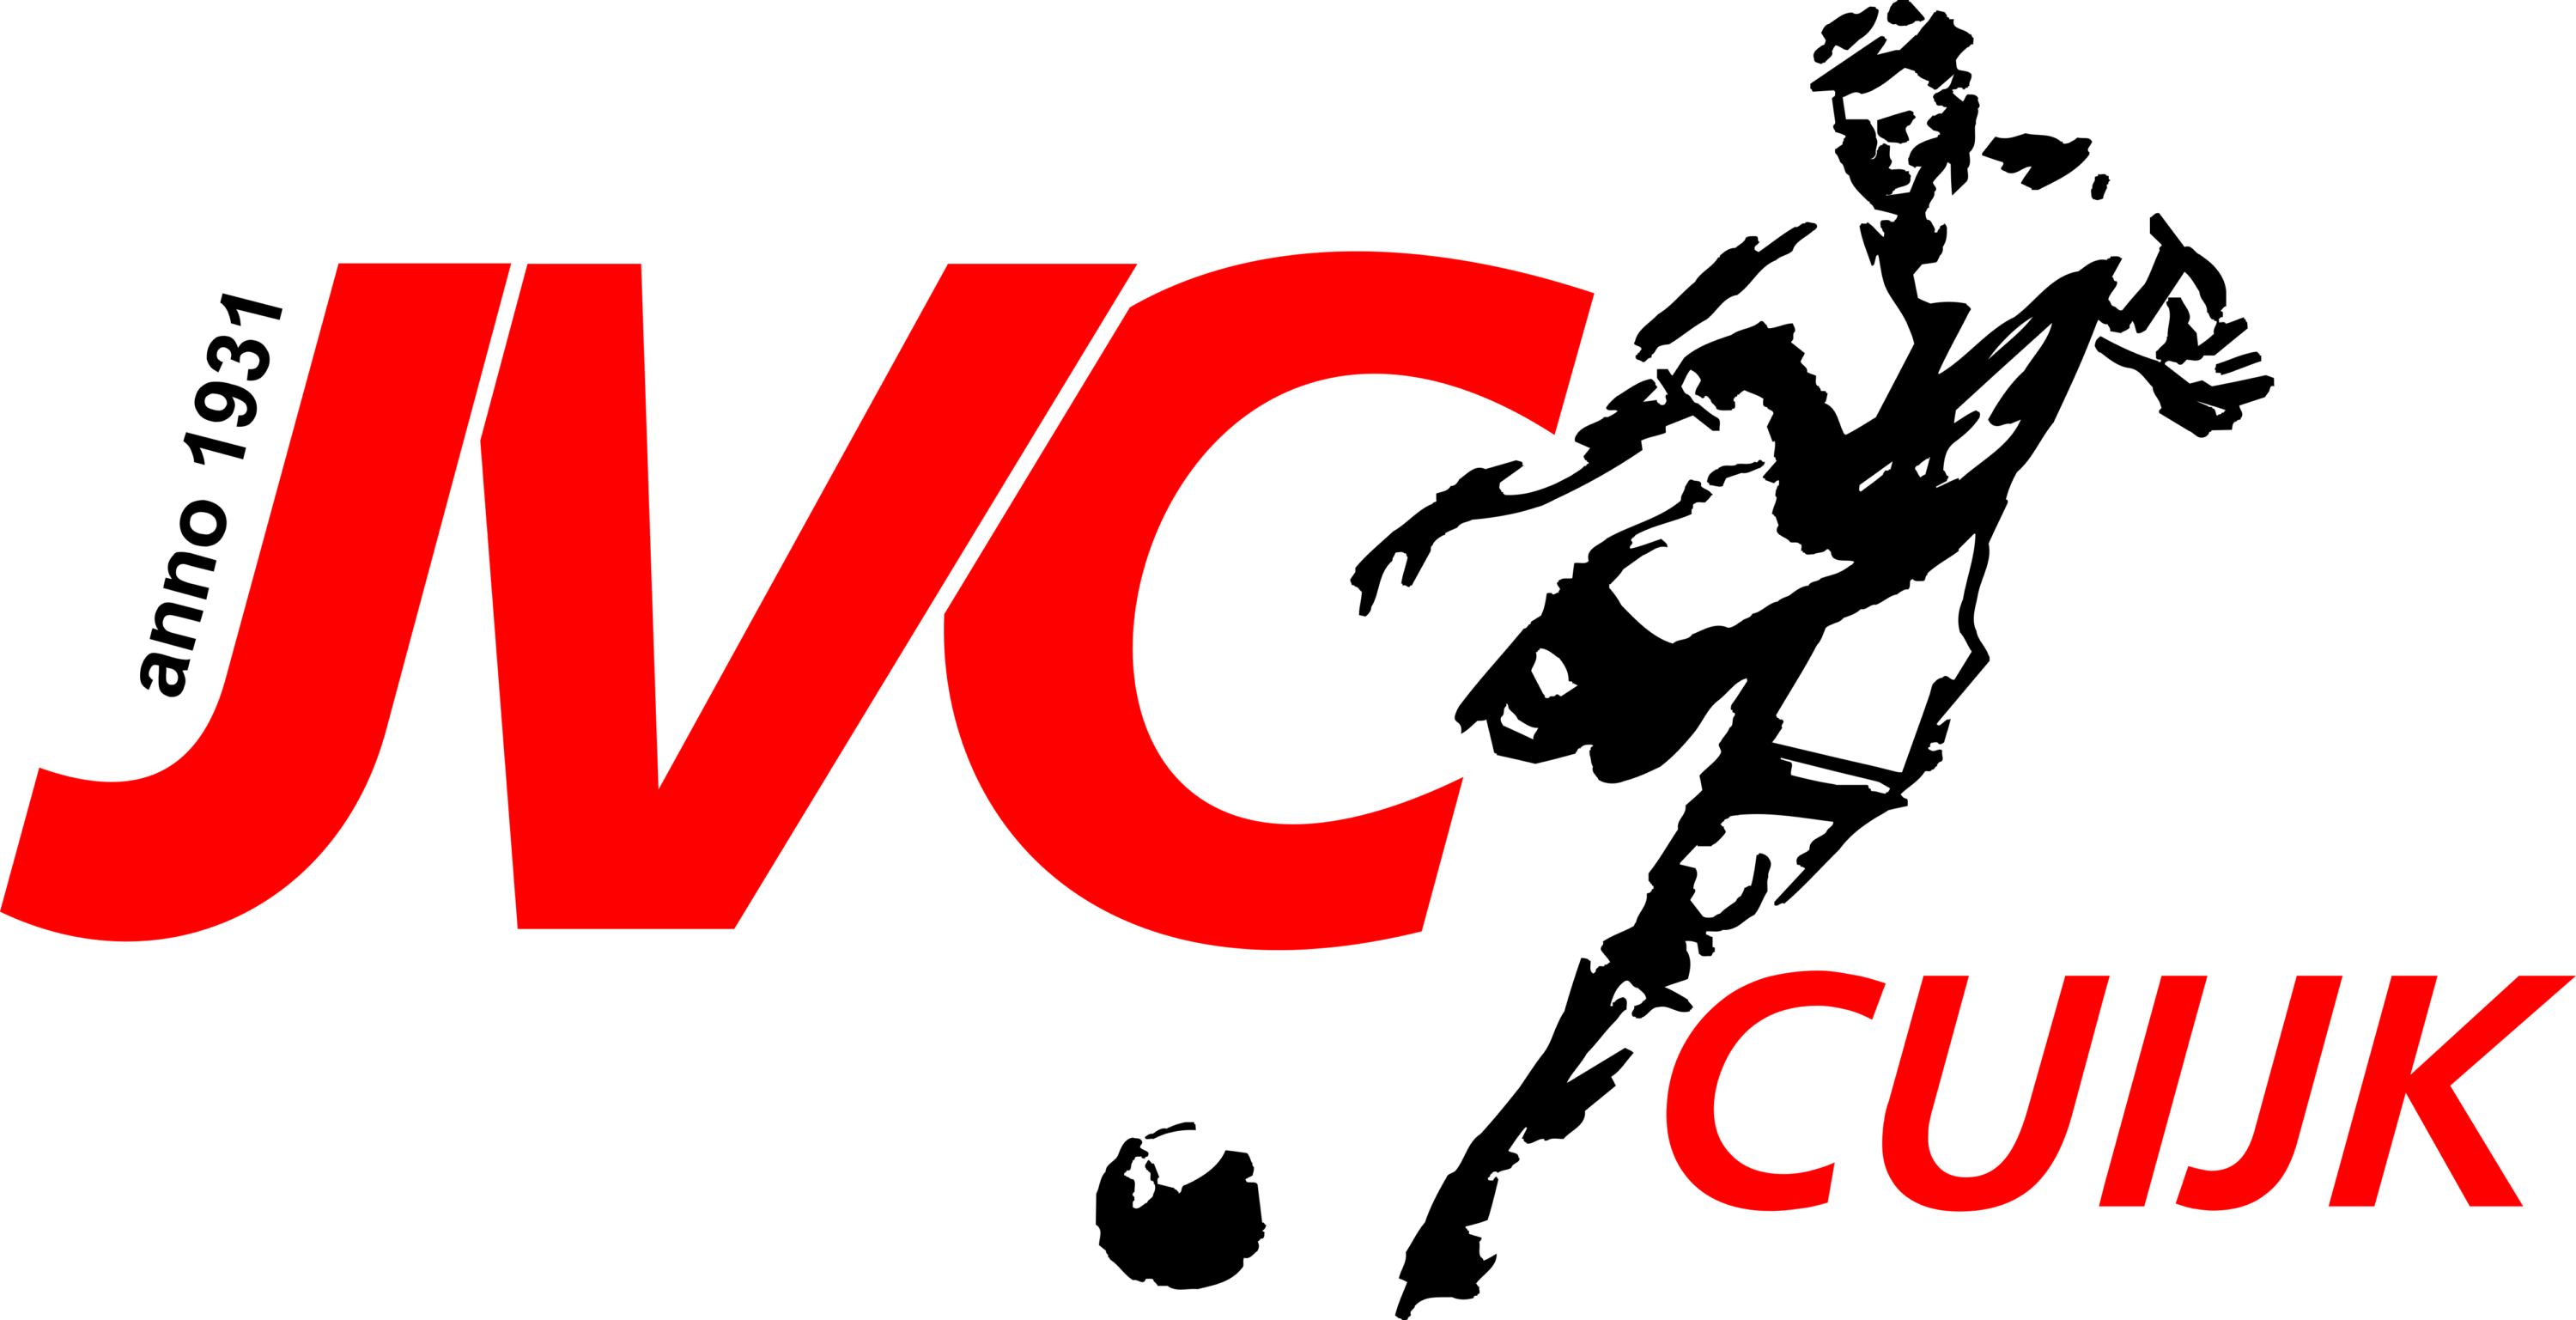 JVC Cuijk Logo